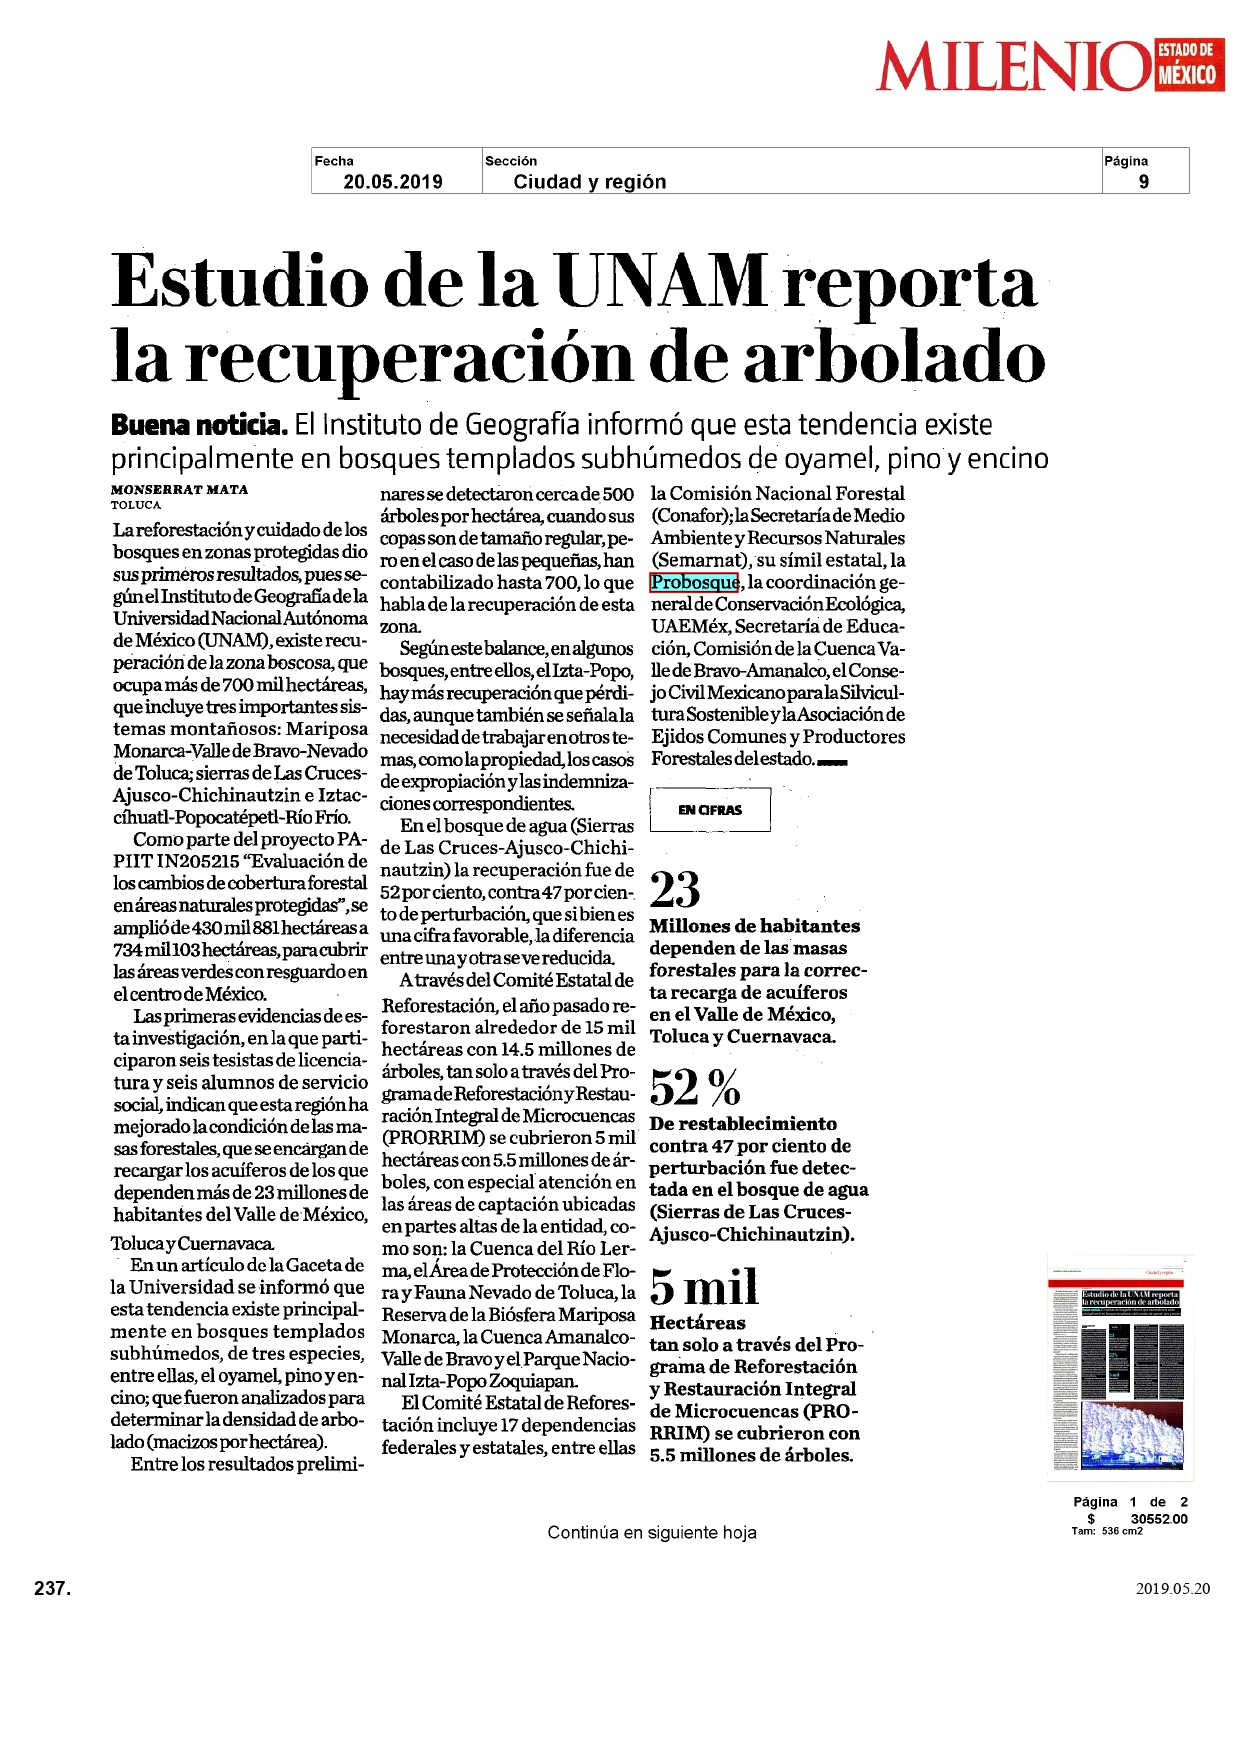 Estudio de la UNAM reporta la recuperación de arbolado